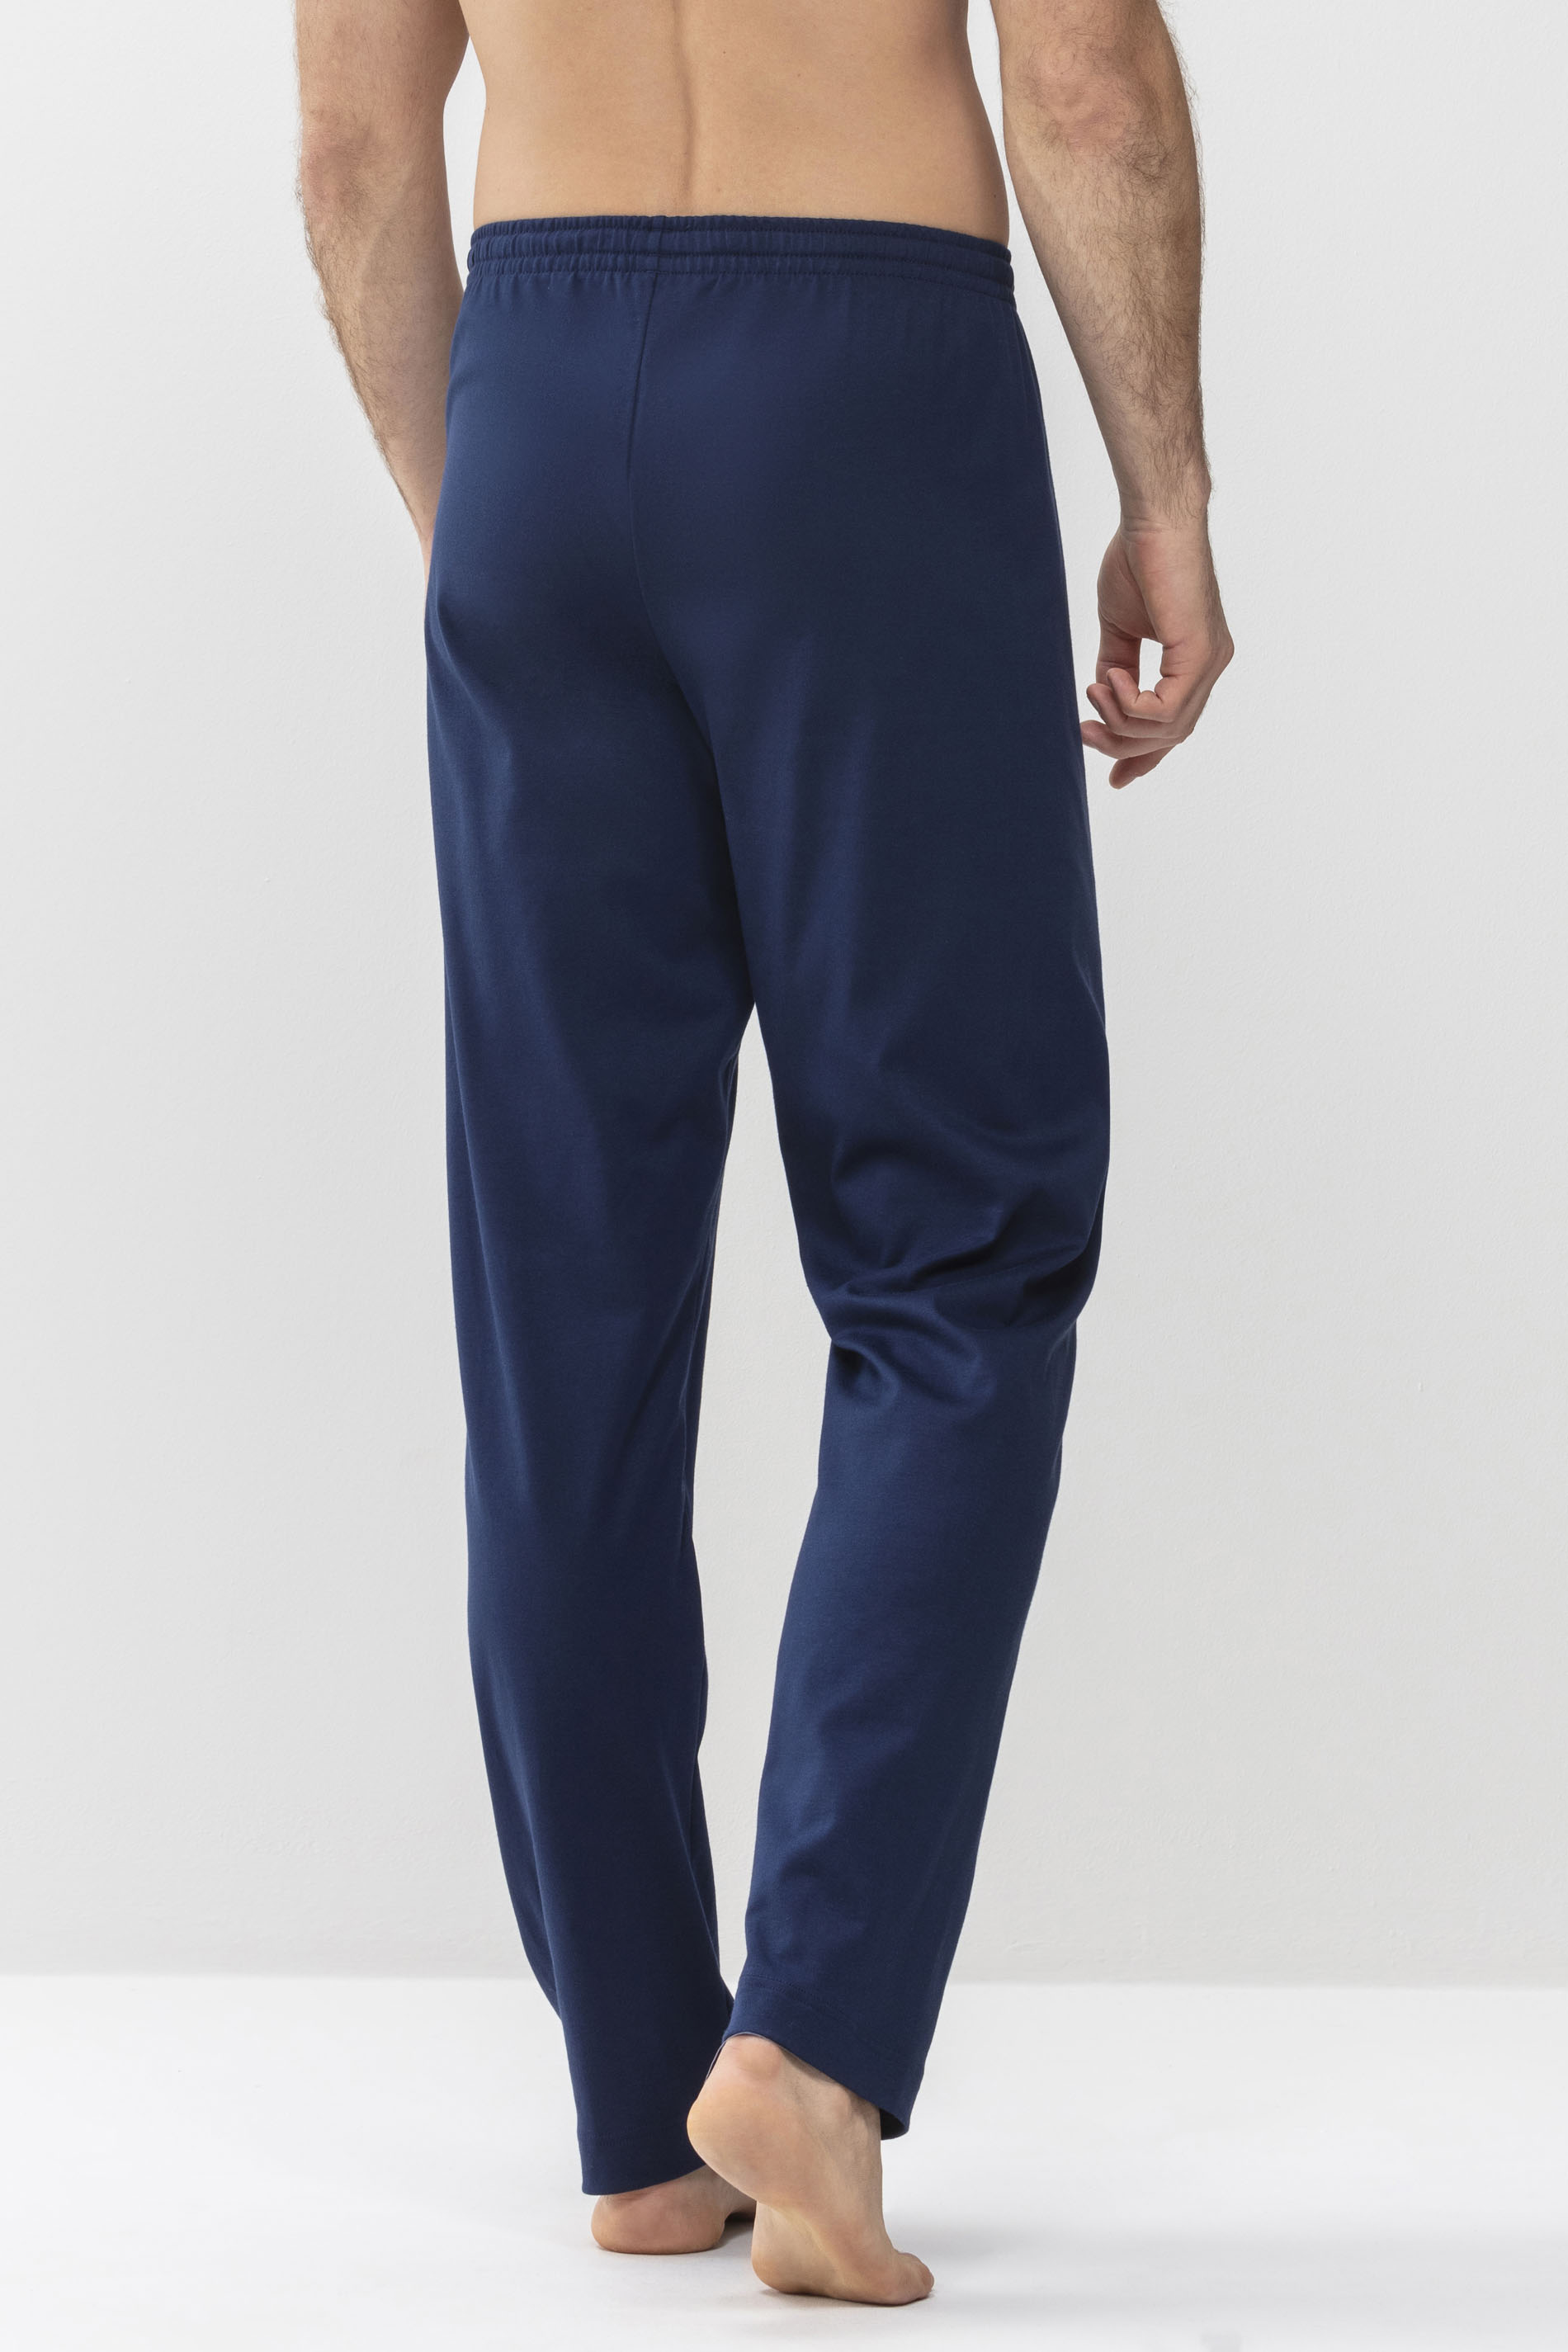 Long trousers Neptune Serie Melton Rear View | mey®